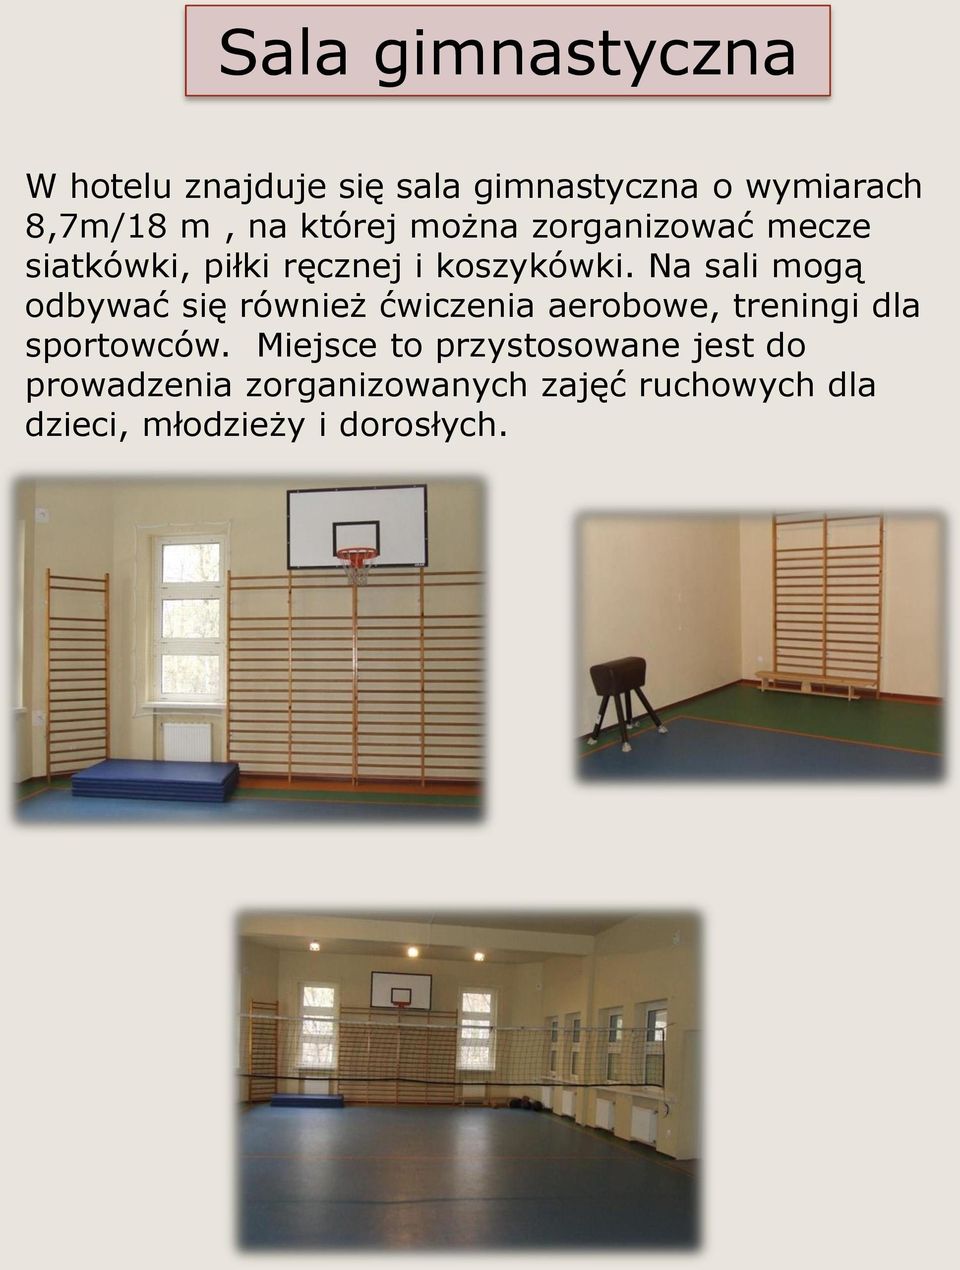 Na sali mogą odbywać się również ćwiczenia aerobowe, treningi dla sportowców.